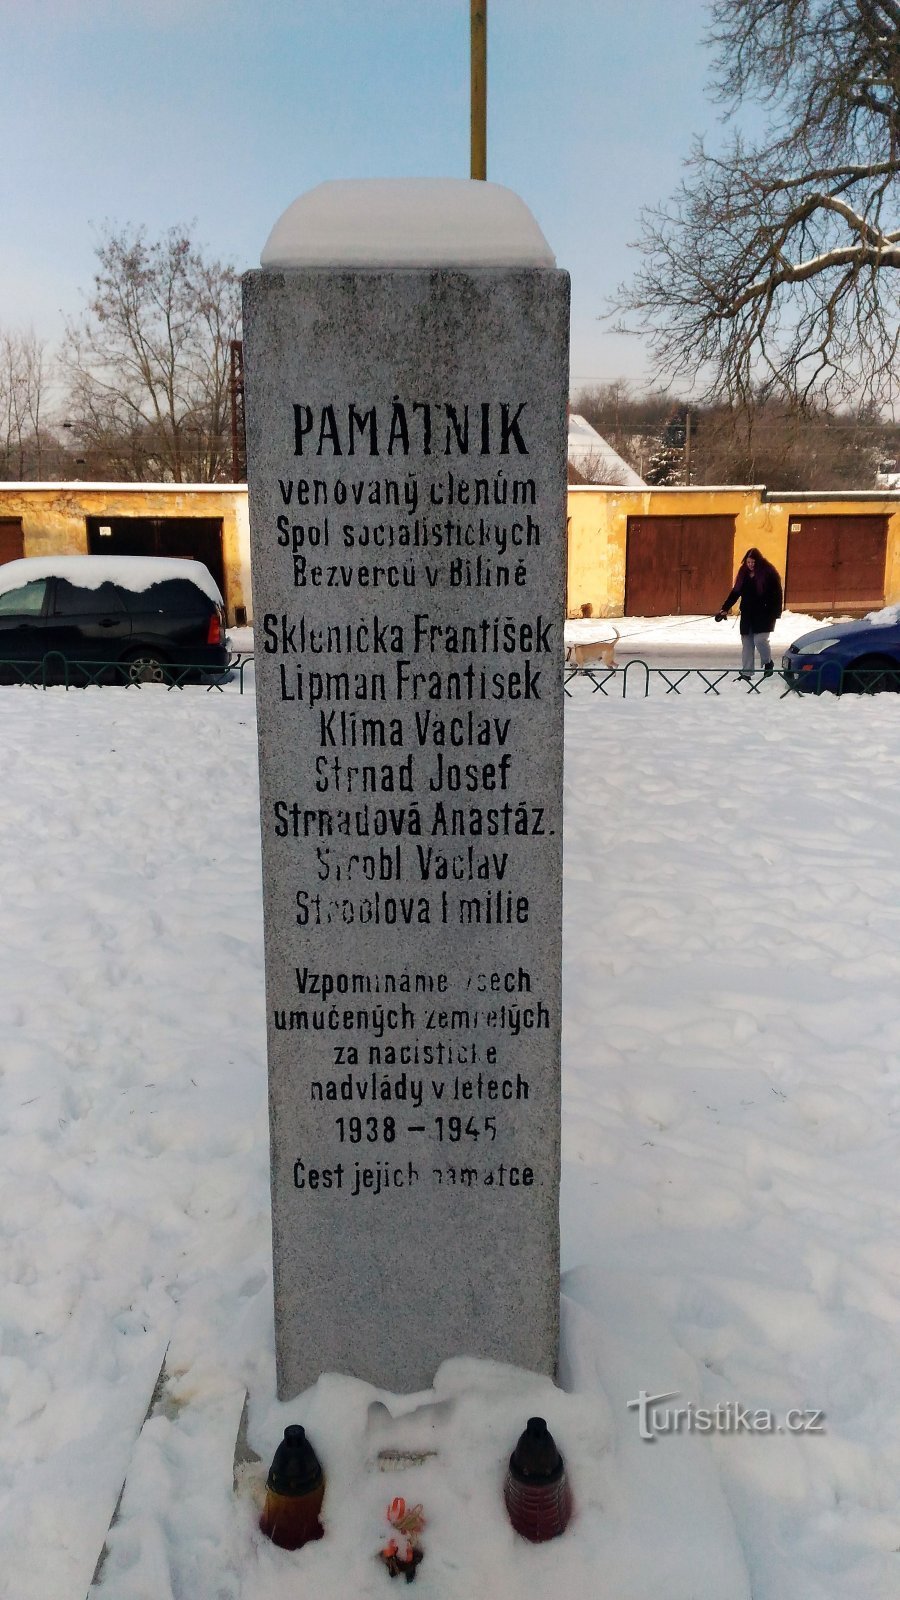 Memoriale alle vittime di II. Guerra mondiale a Bilina.